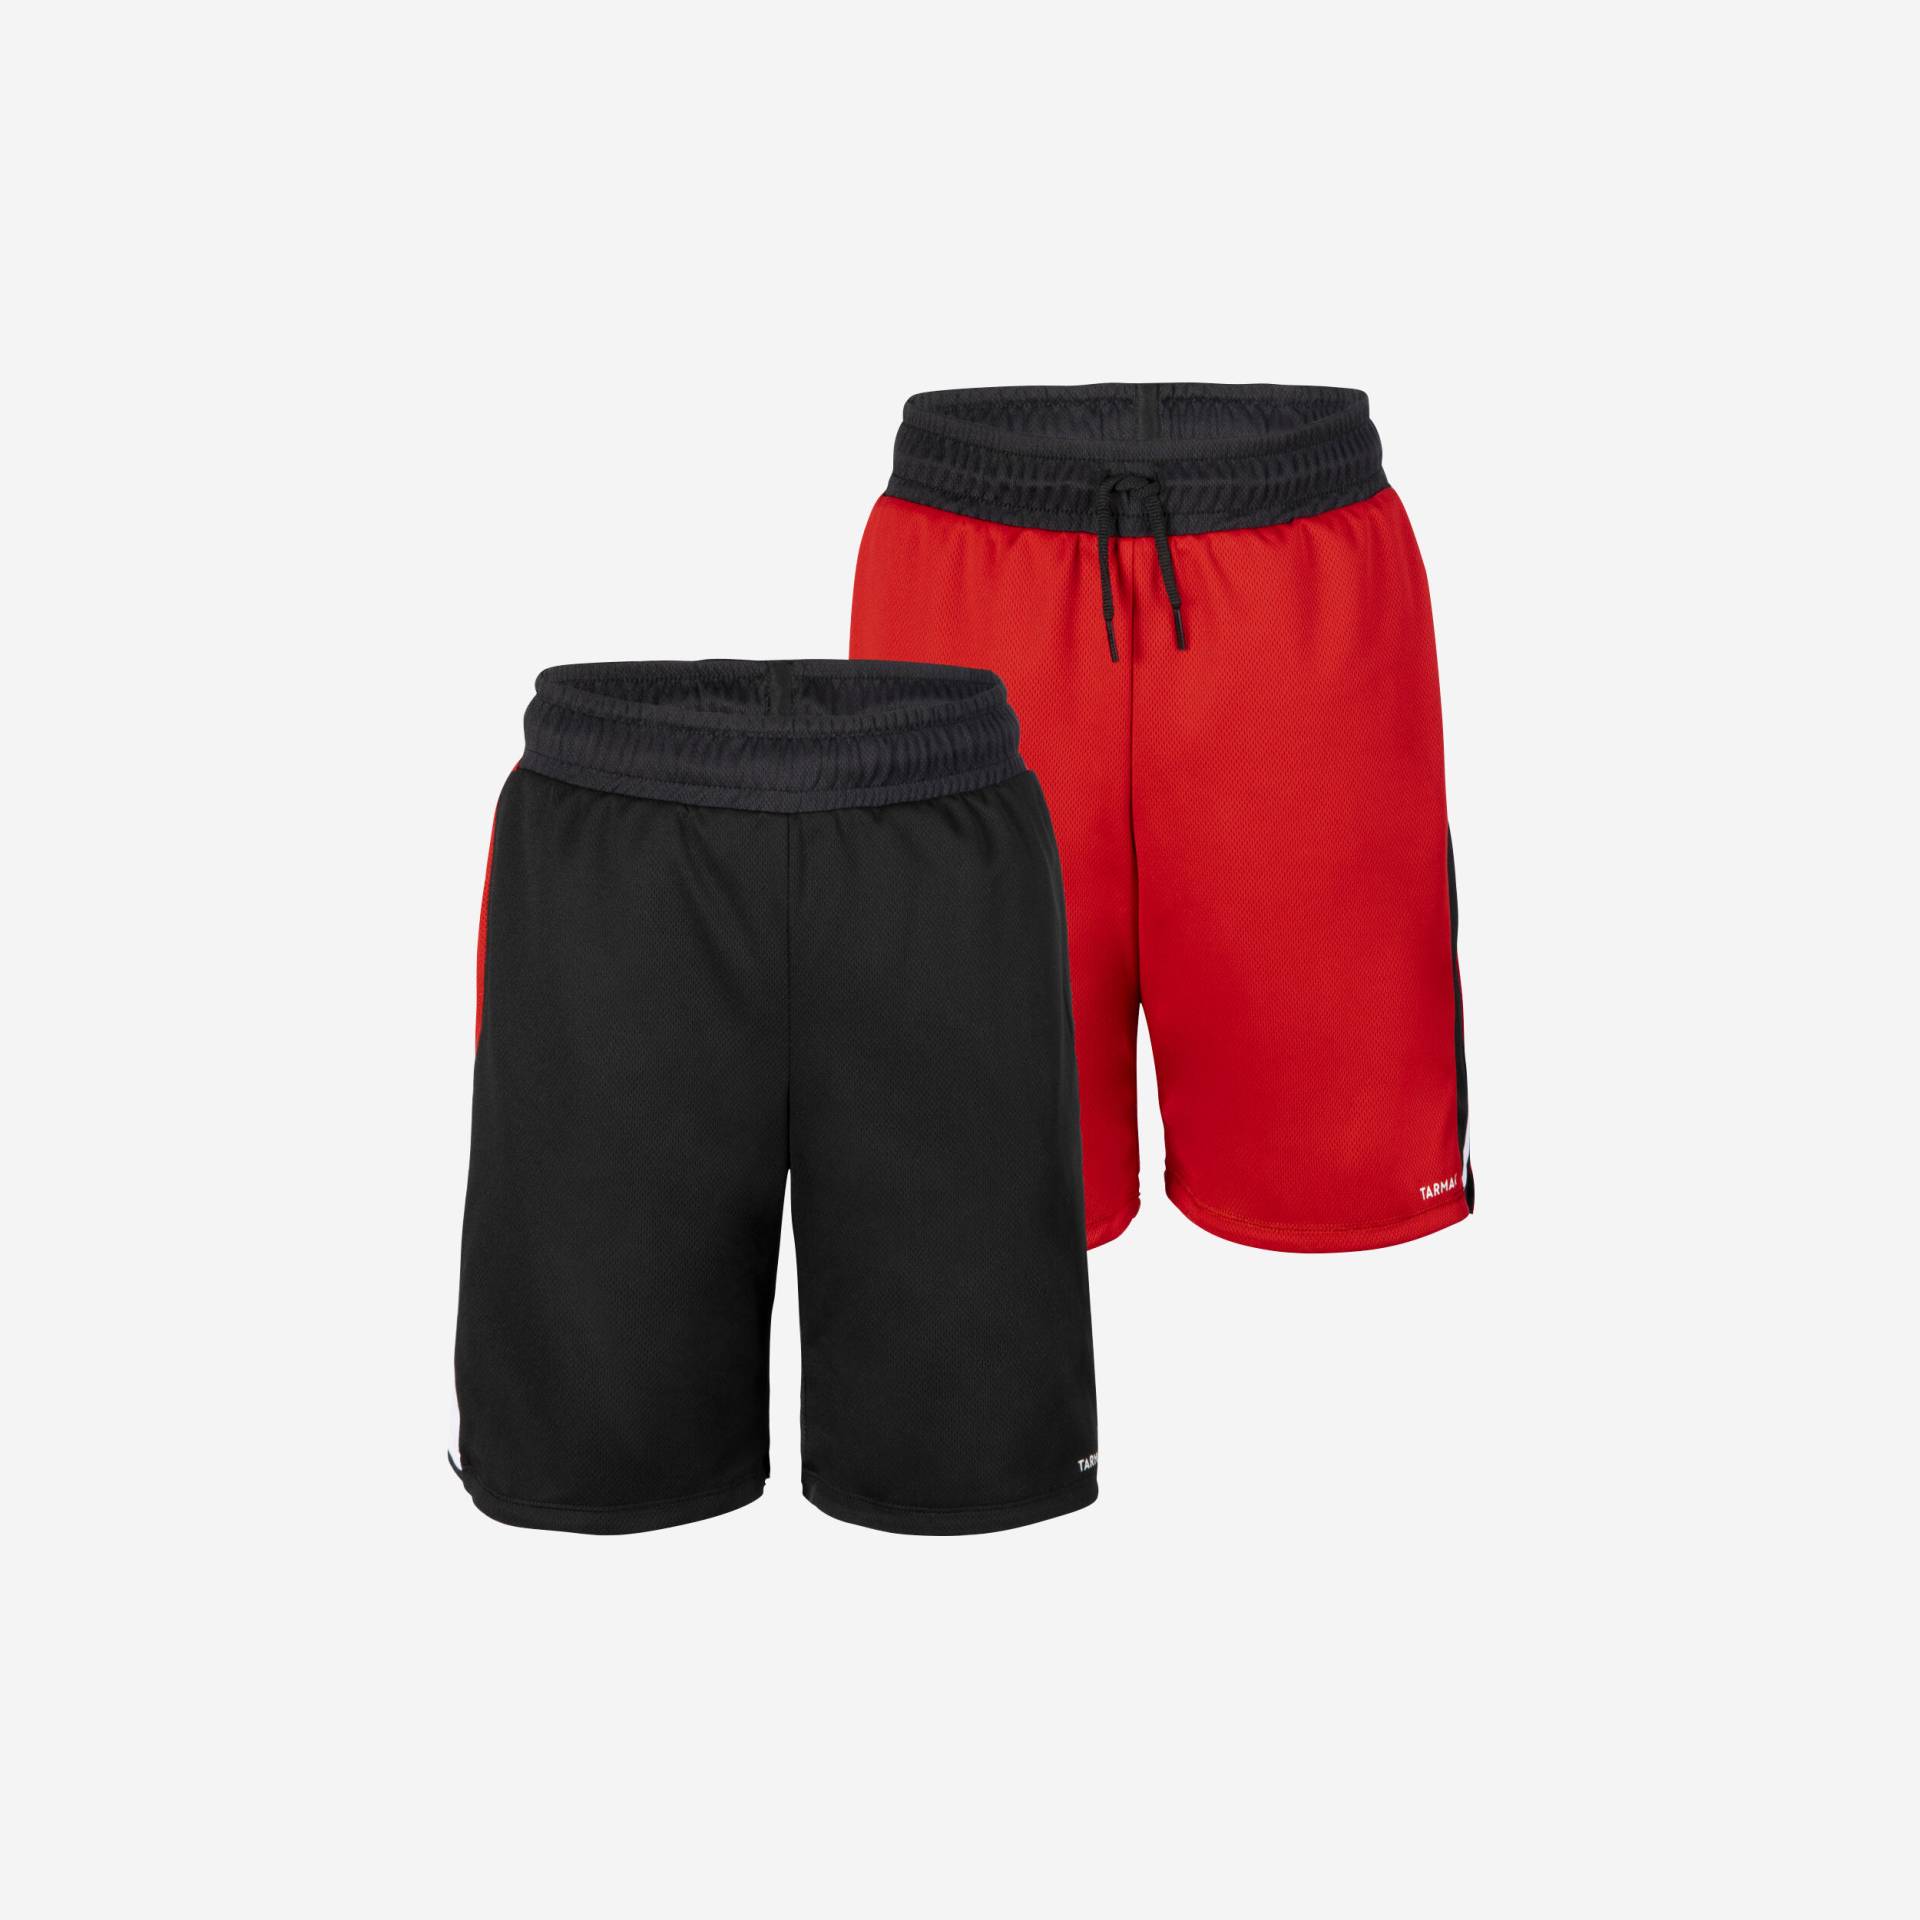 Kinder wendbare Basketball Shorts - SH500R schwarz/rot von TARMAK